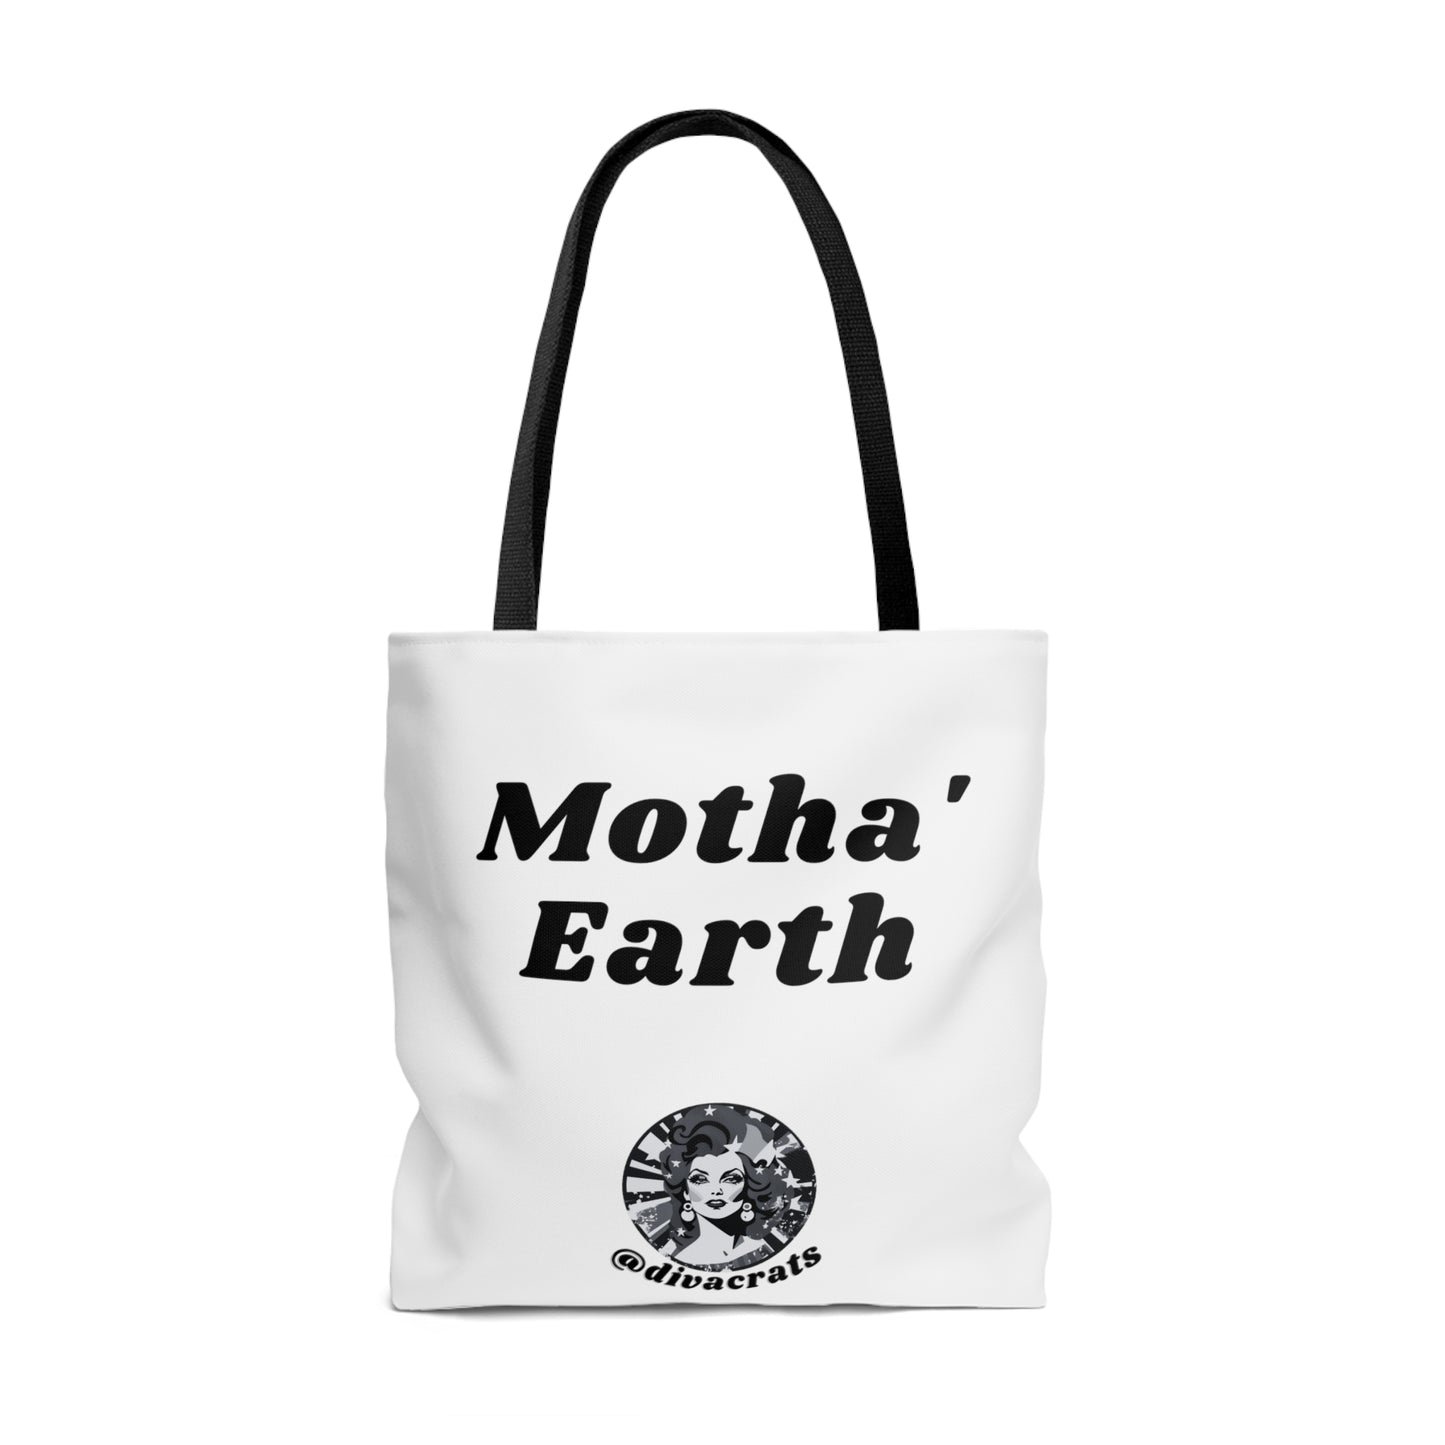 Motha' Earth